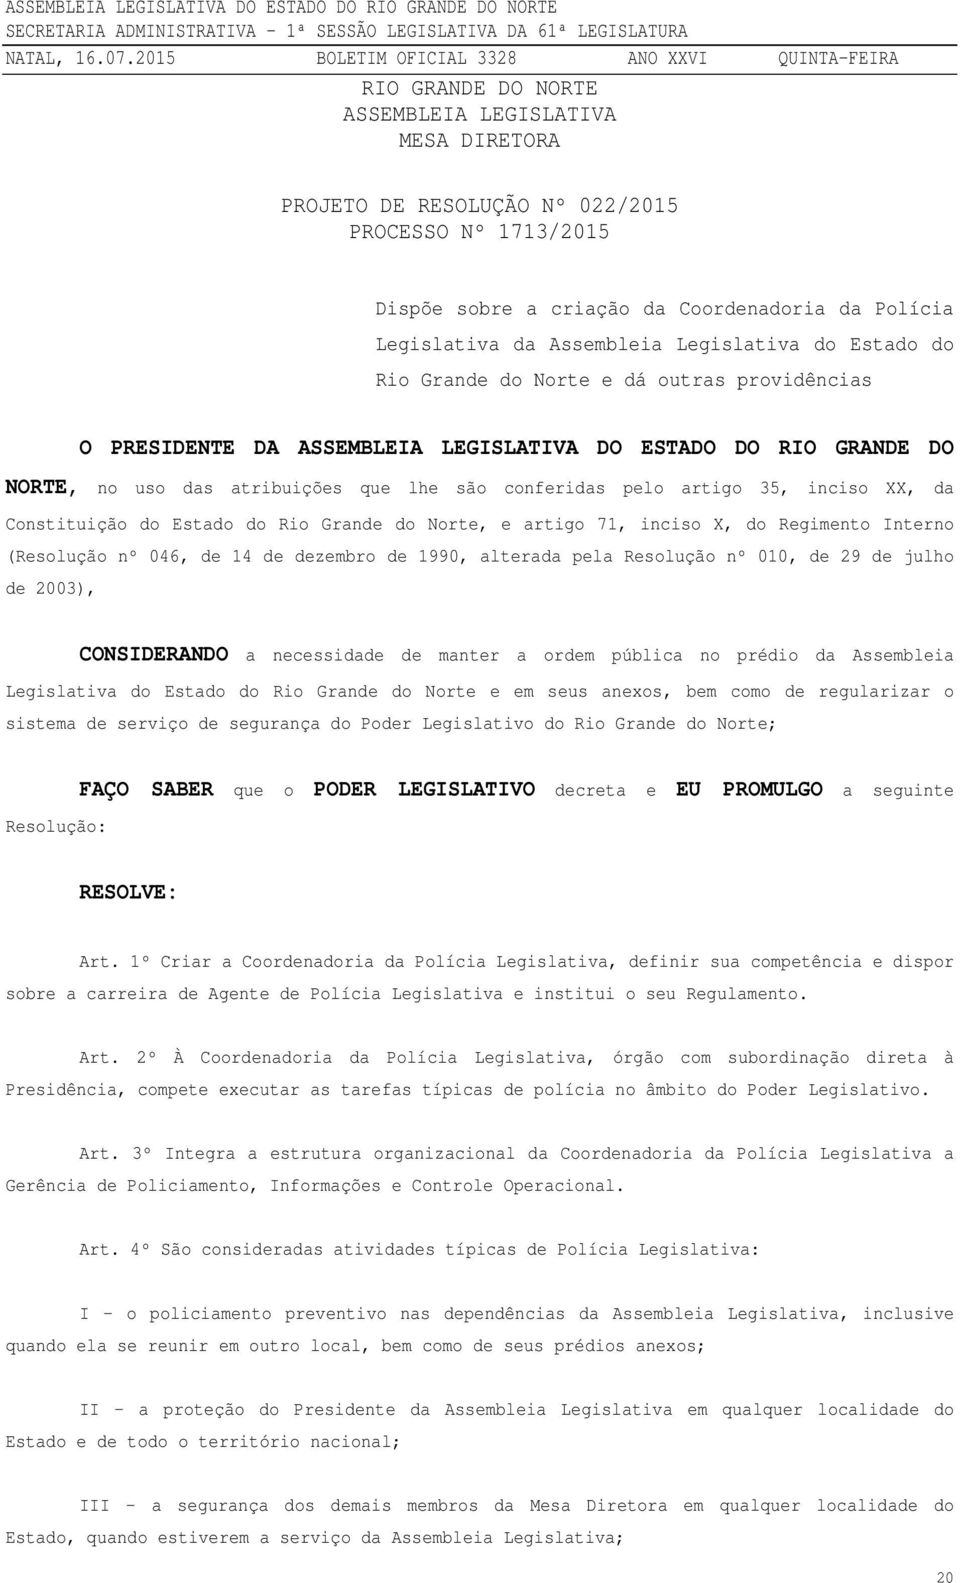 artigo 35, inciso XX, da Constituição do Estado do Rio Grande do Norte, e artigo 71, inciso X, do Regimento Interno (Resolução nº 046, de 14 de dezembro de 1990, alterada pela Resolução nº 010, de 29